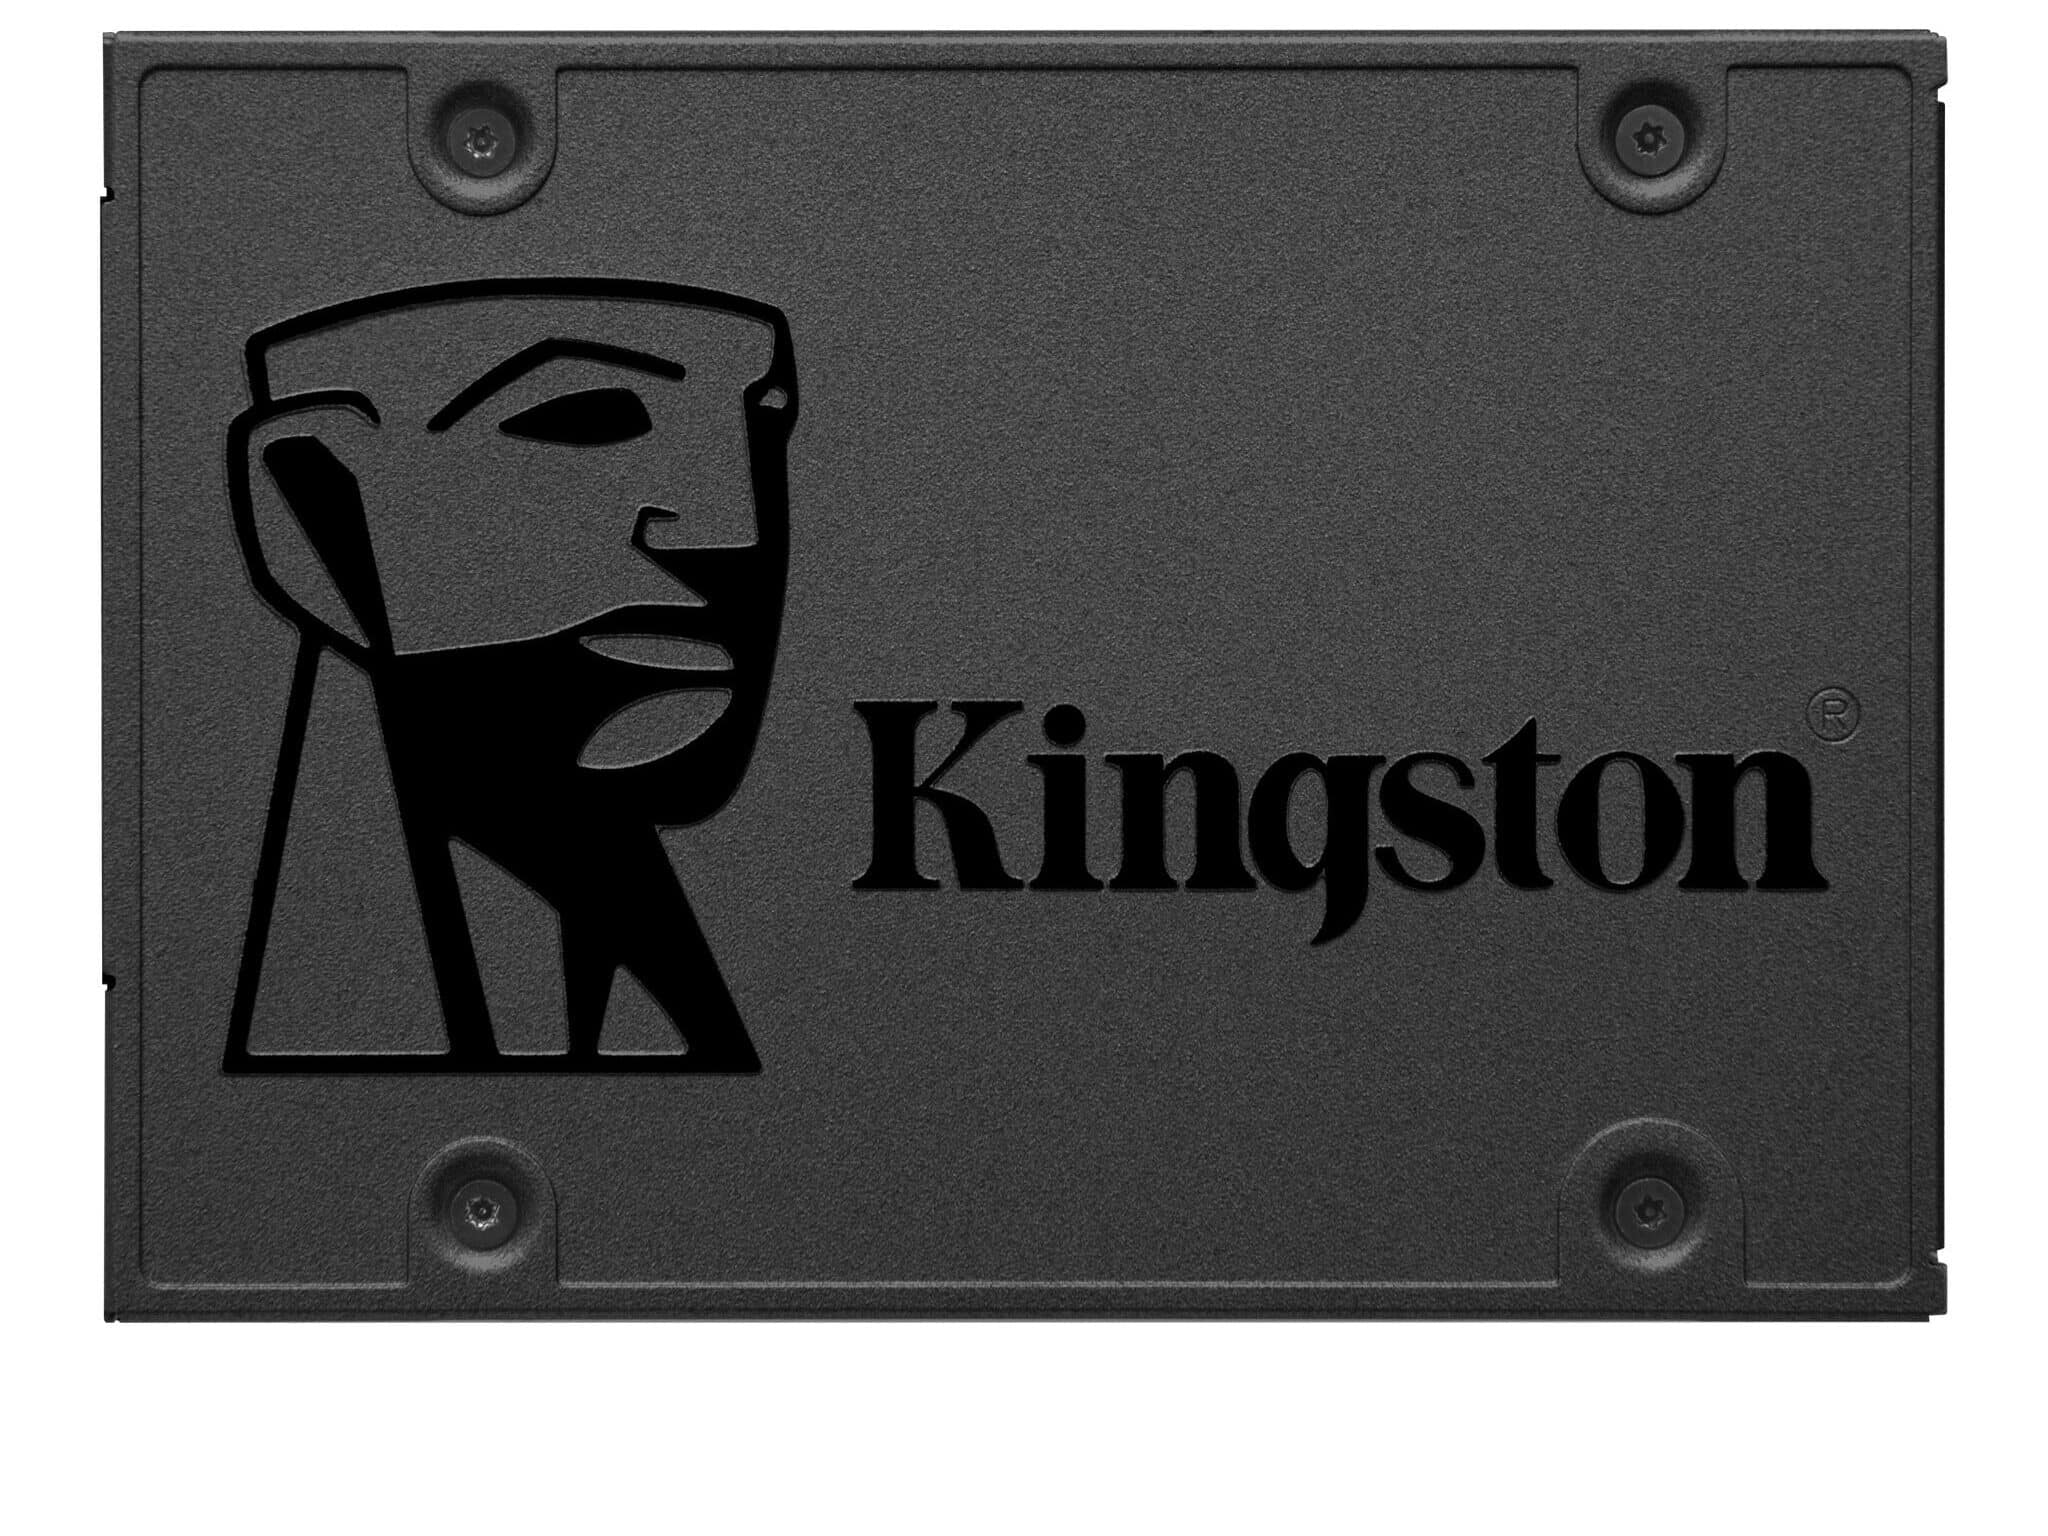 Kingston A400 120GB